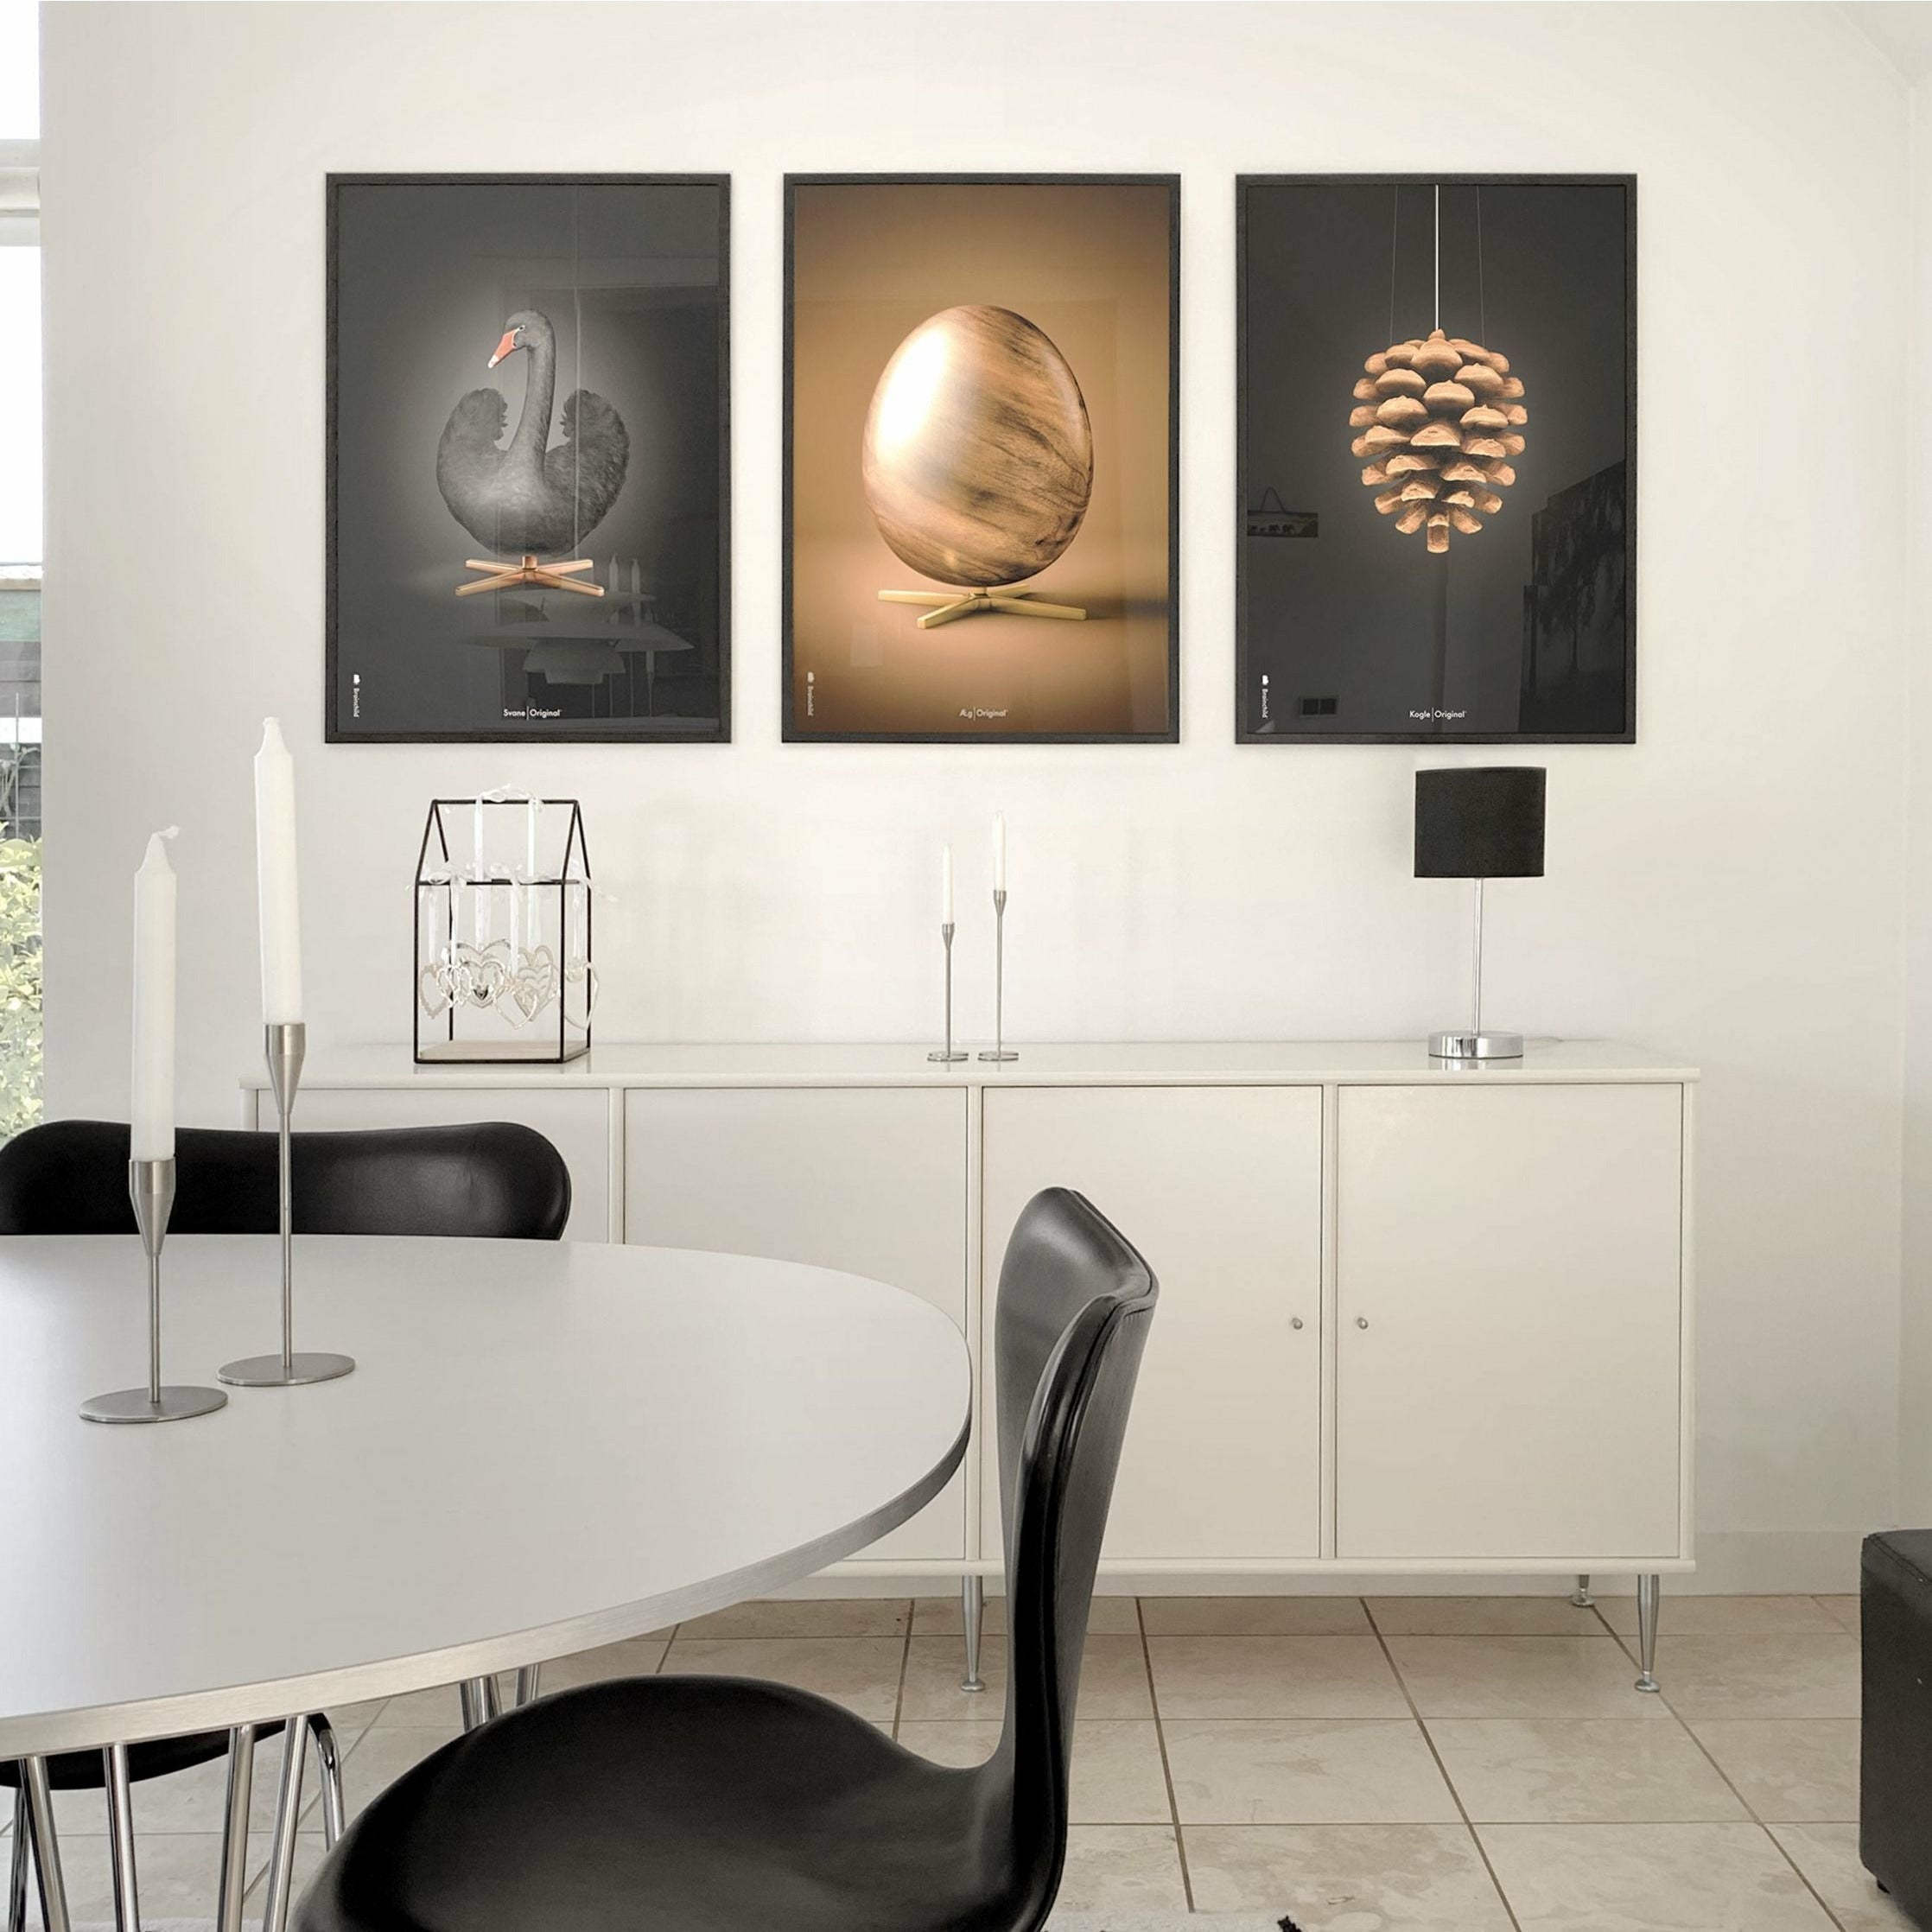 brainchild Affiche classique de cygne, cadre en bois foncé 50x70 cm, fond noir / noir